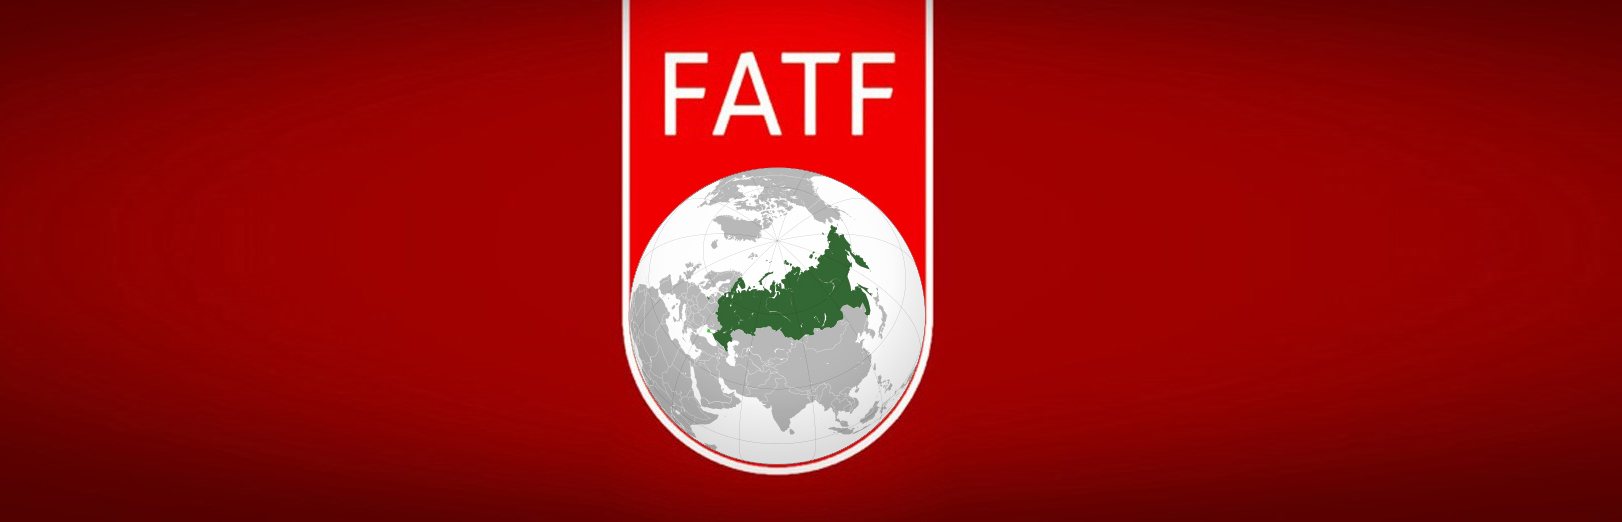 Новые правила FATF снизили анонимность межбиржевых переводов